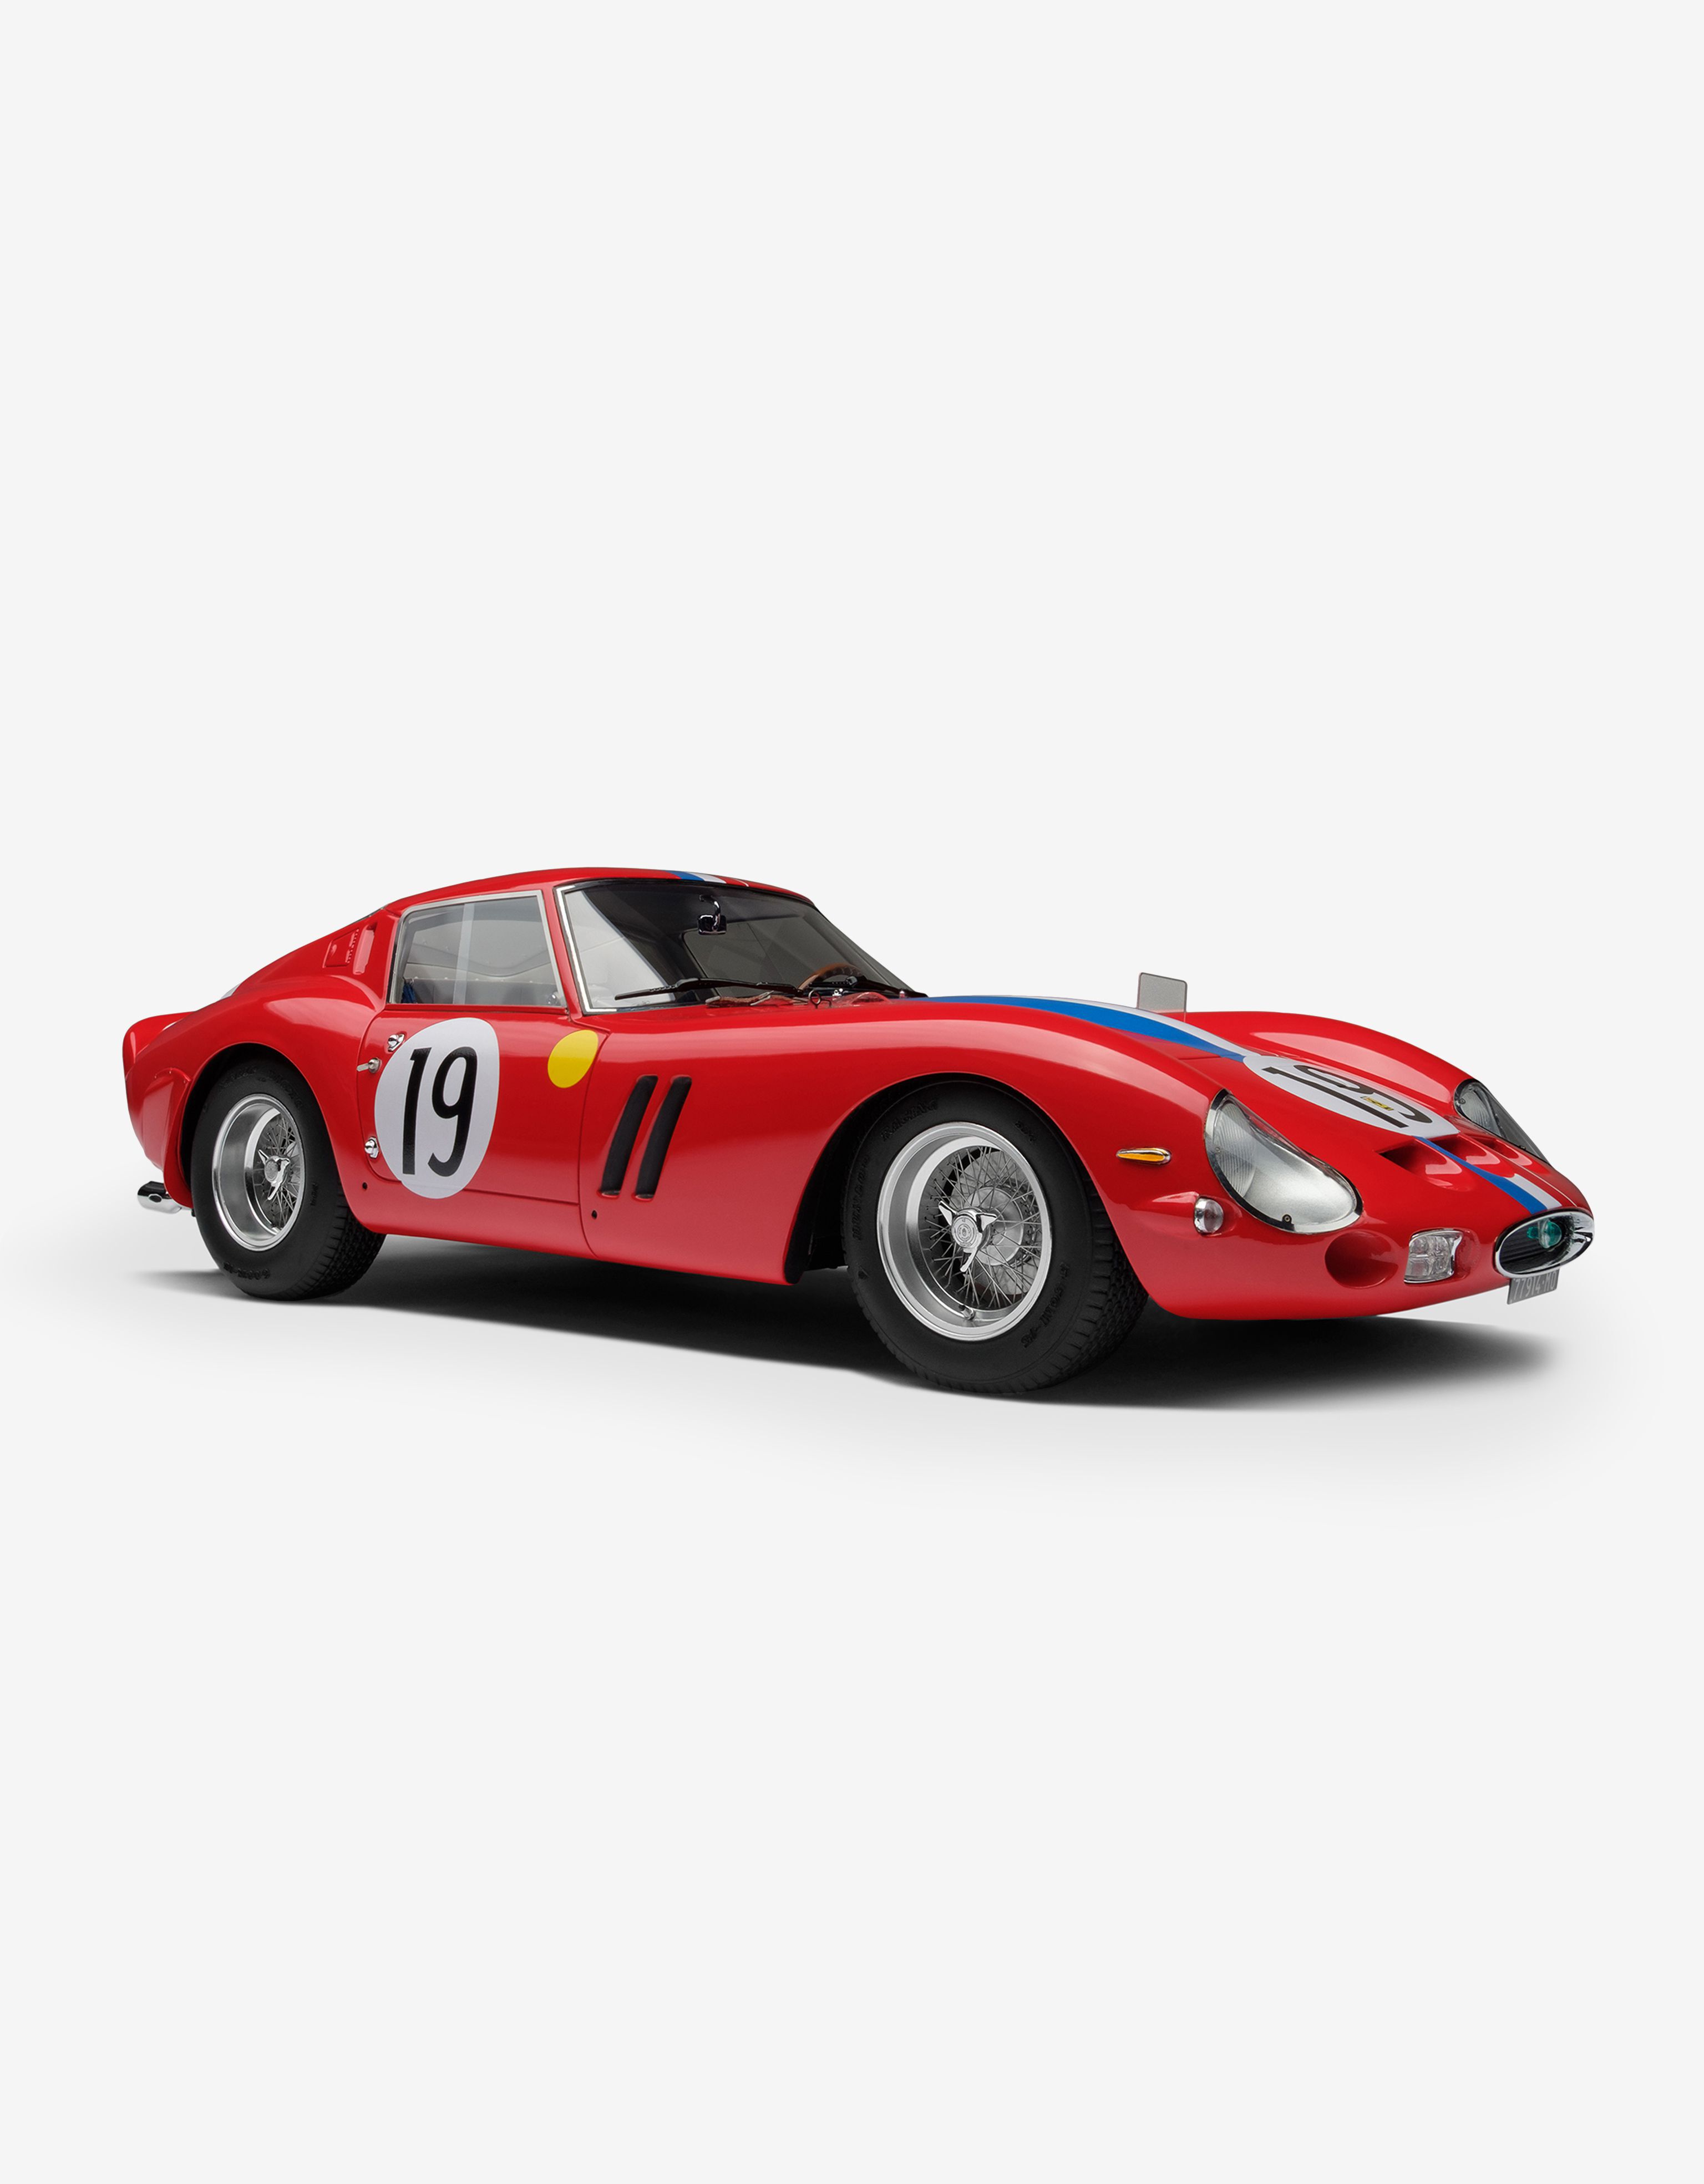 Ferrari Ferrari 250 GTO 1962 Le Mans model in 1:18 scale Rosso Corsa F0883f